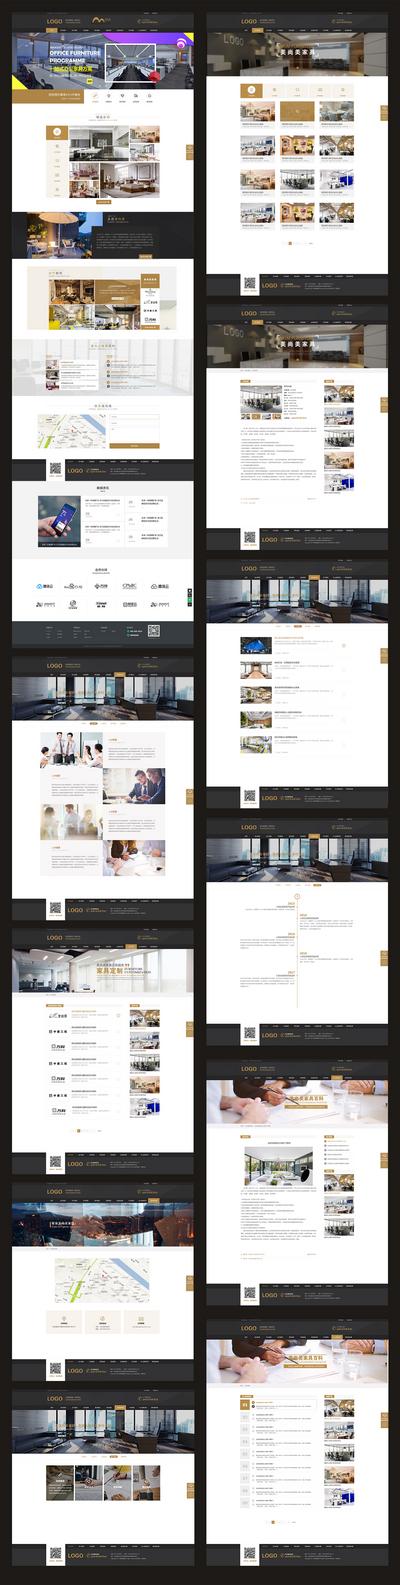 【南门网】网站设计 网页设计 企业网站 公司网站 官网 家居 家具